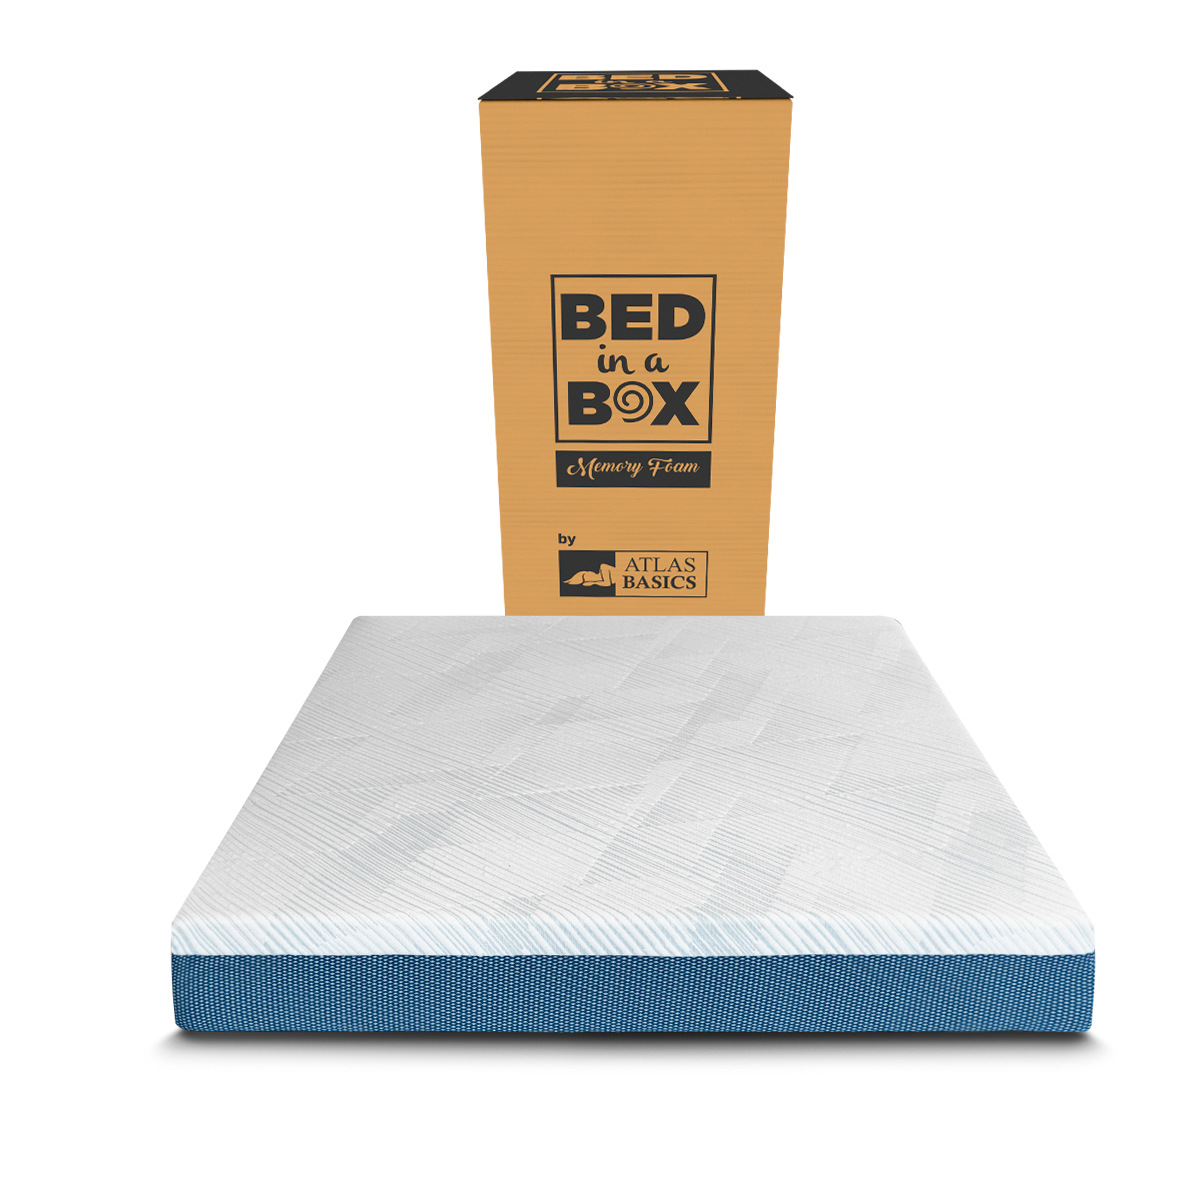 Colchón Queen Size De Memory Foam Atlas Basics Bed In A Box